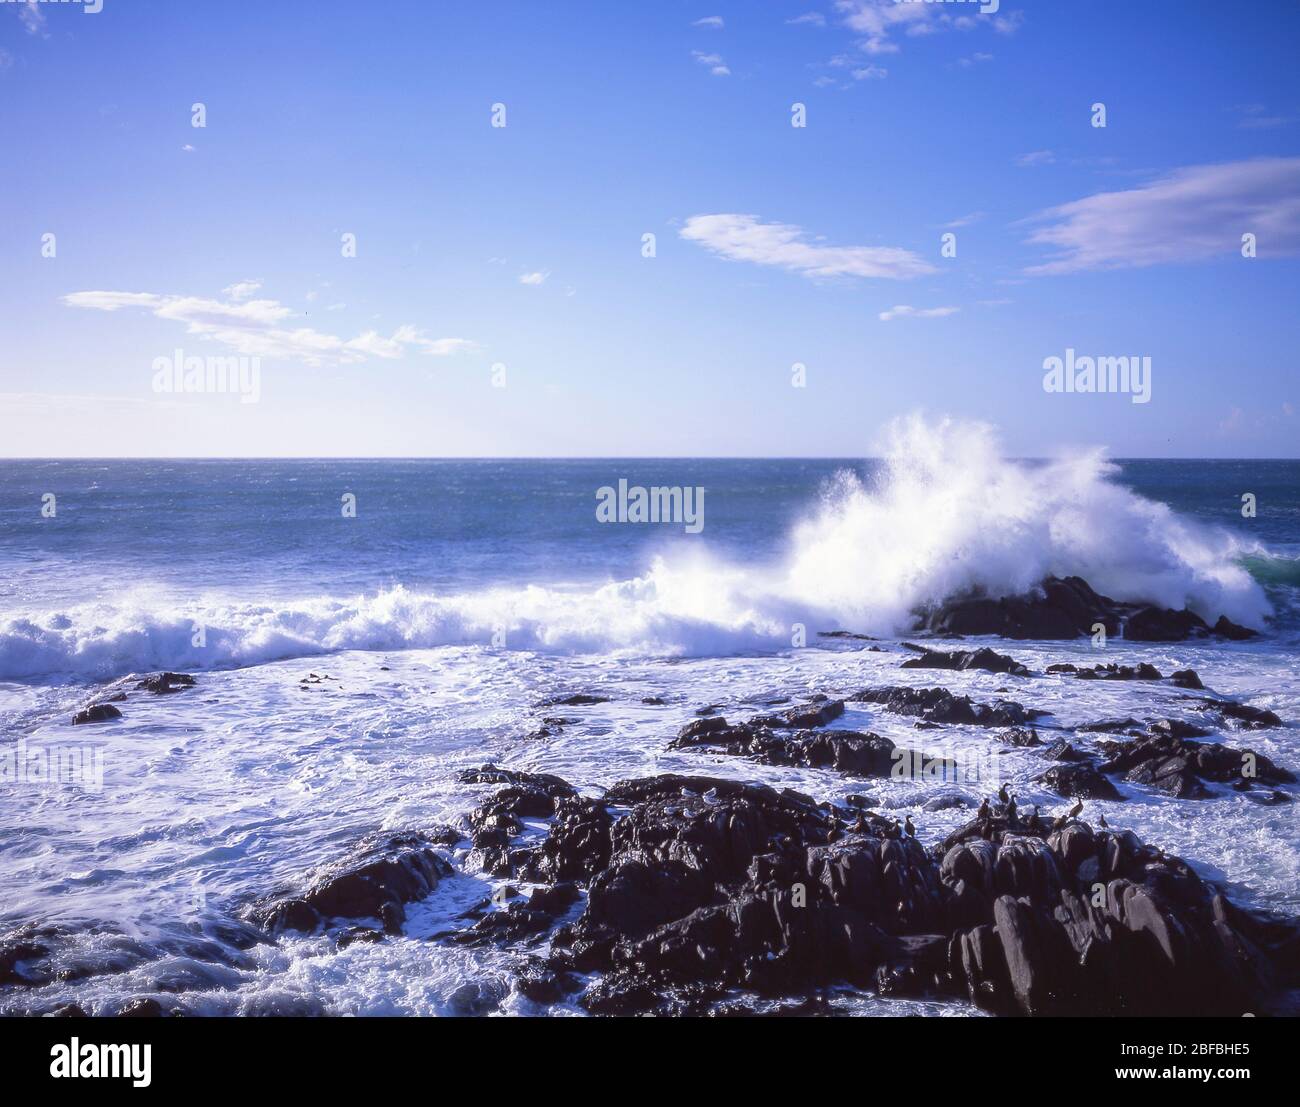 Olas rompiendo en la costa, costa de Kaikoura, Kaikoura, región de Canterbury, isla del sur, Nueva Zelanda Foto de stock